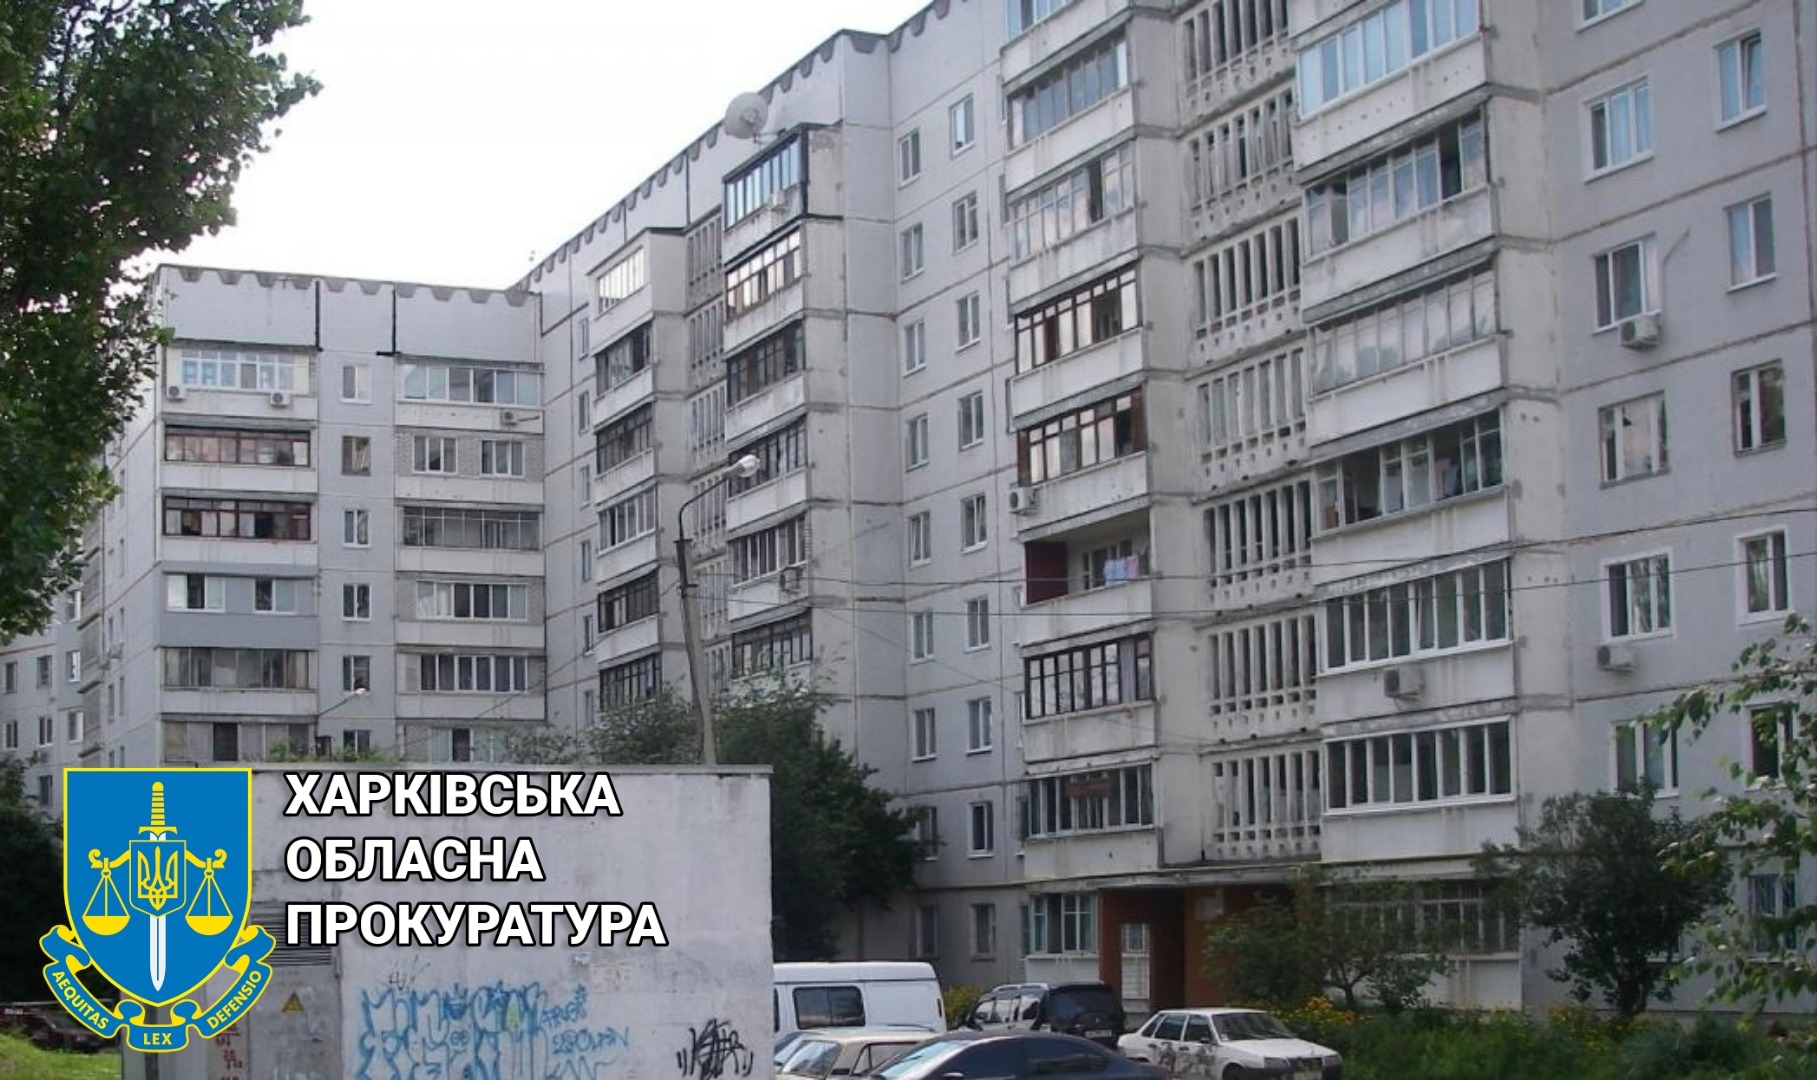 Афера з нерухомістю: у власність громади Харкова буде передано квартиру вартістю 2,4 млн гривень